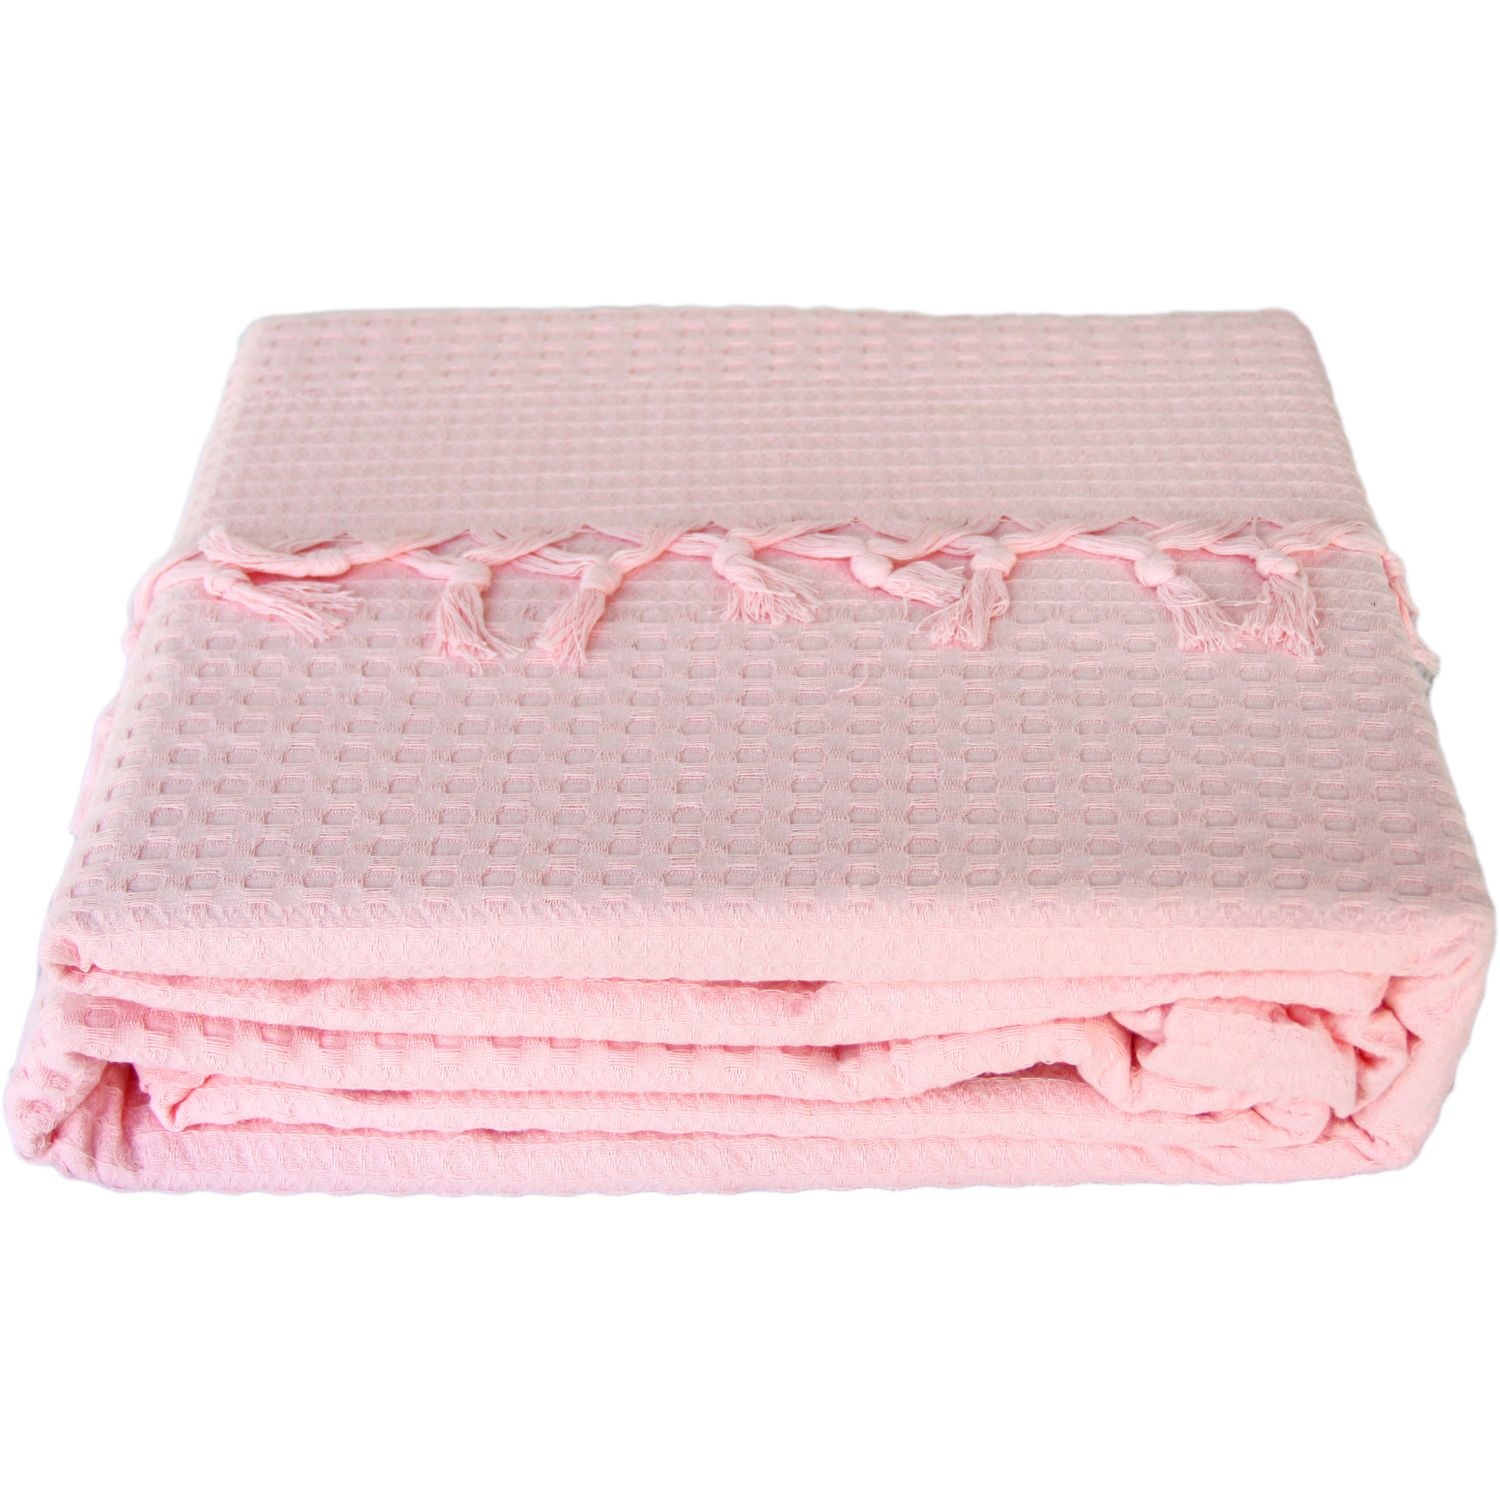 Покривало-плед із бахромою Izzihome Checkers, піке, 240х220 см, ніжно-рожевий (602541) - фото 4